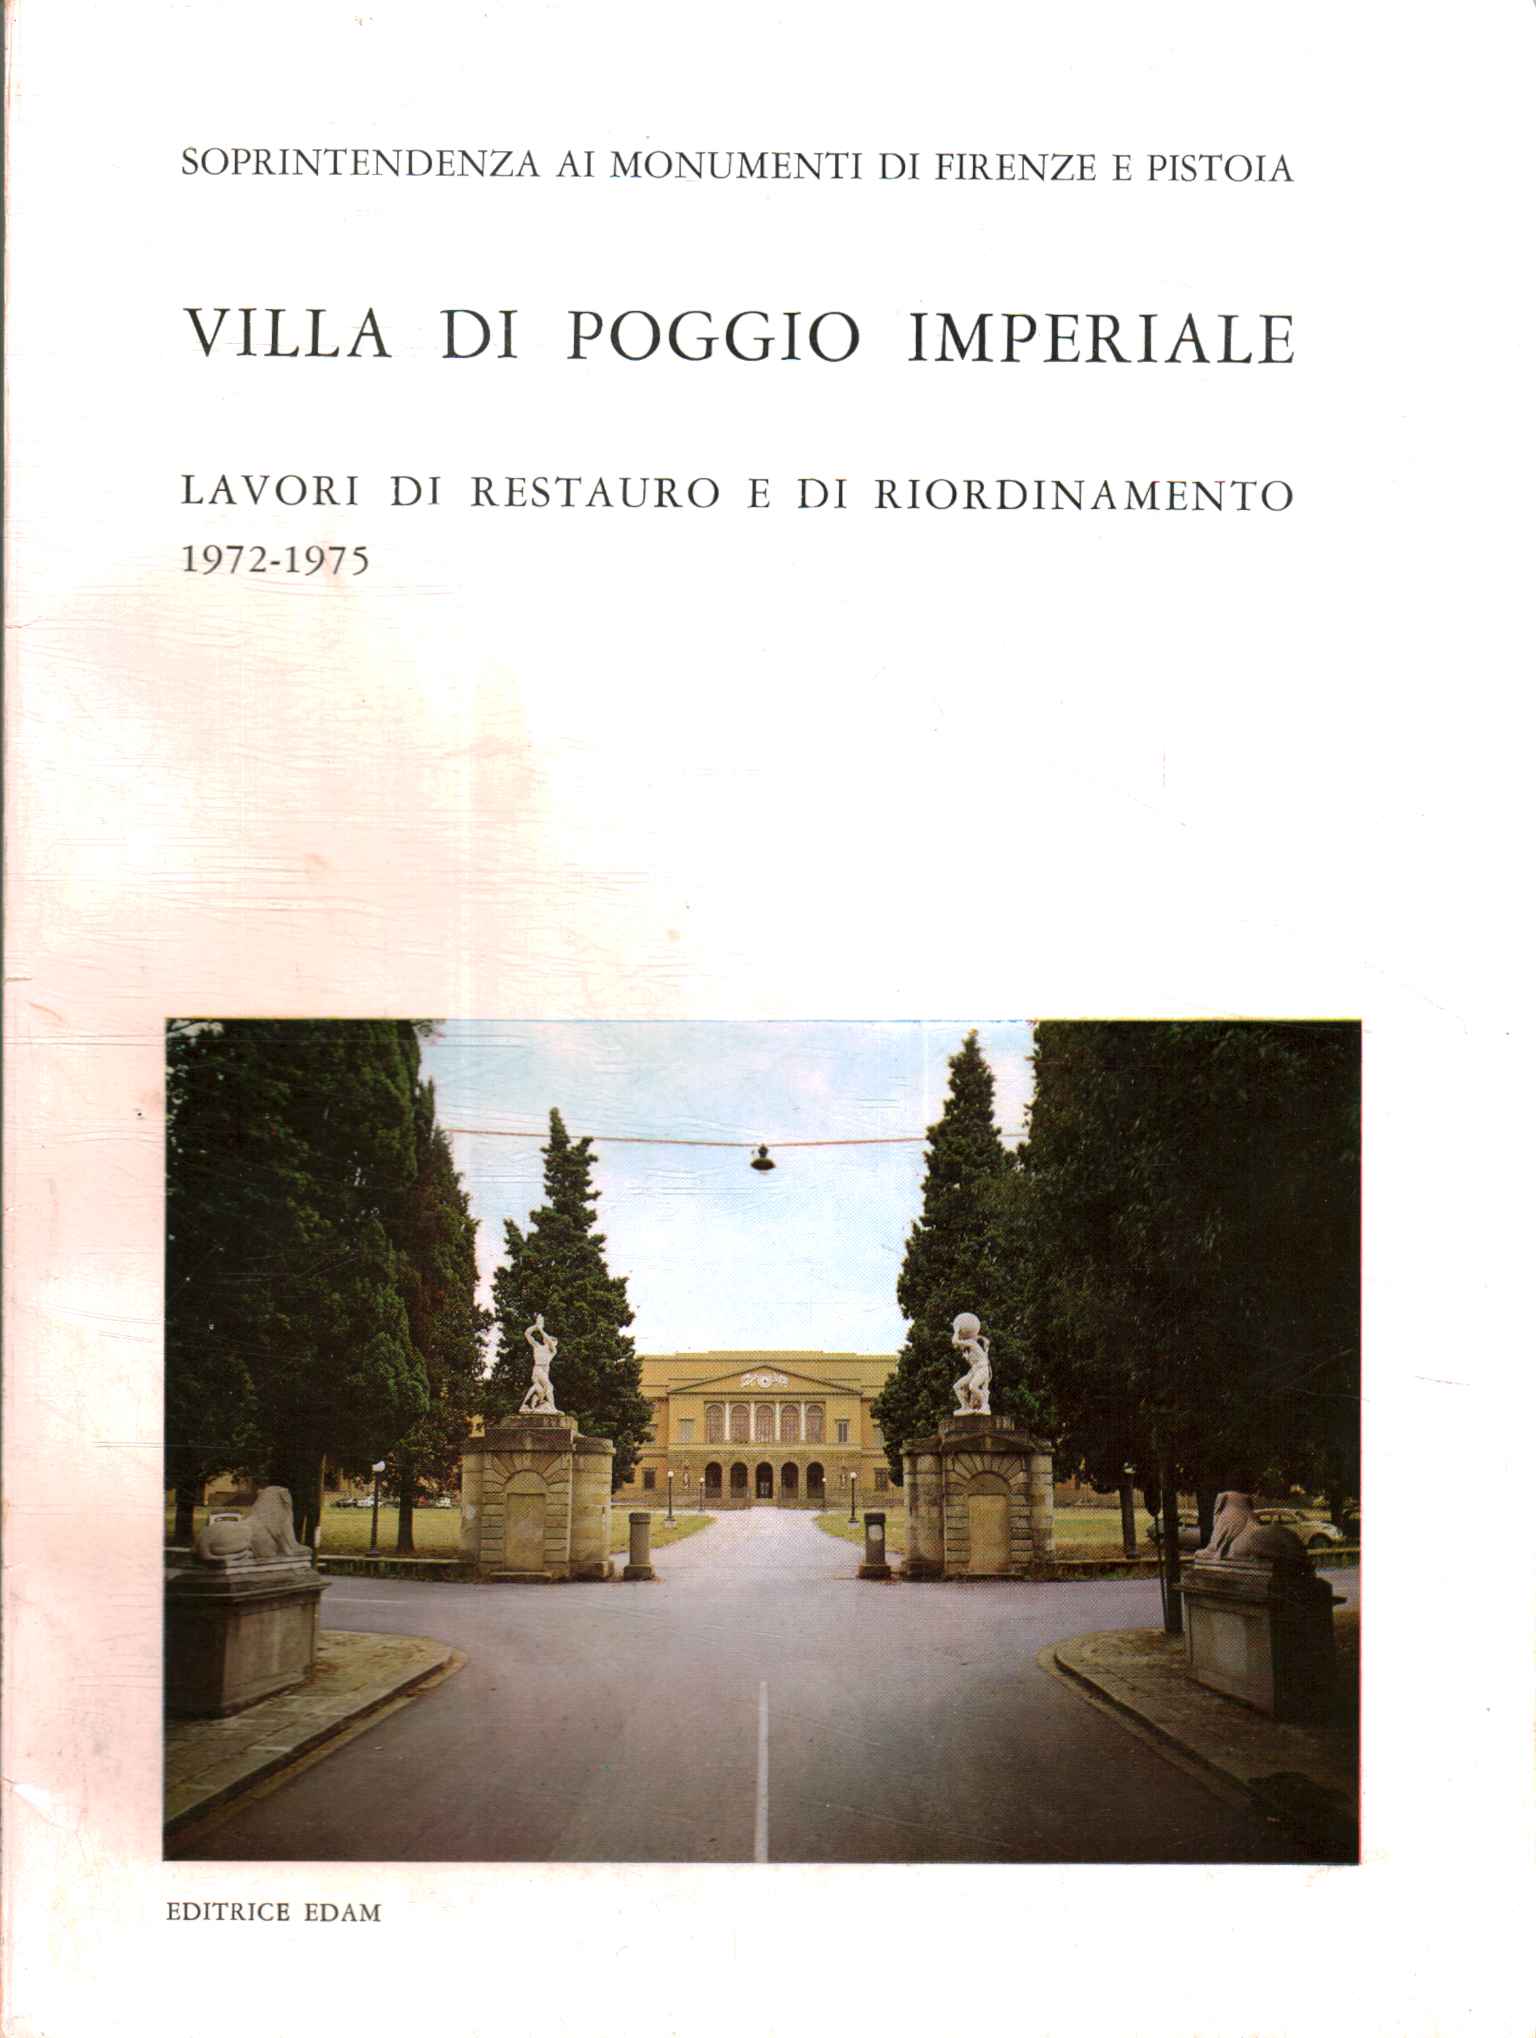 Villa de Poggio Imperiale